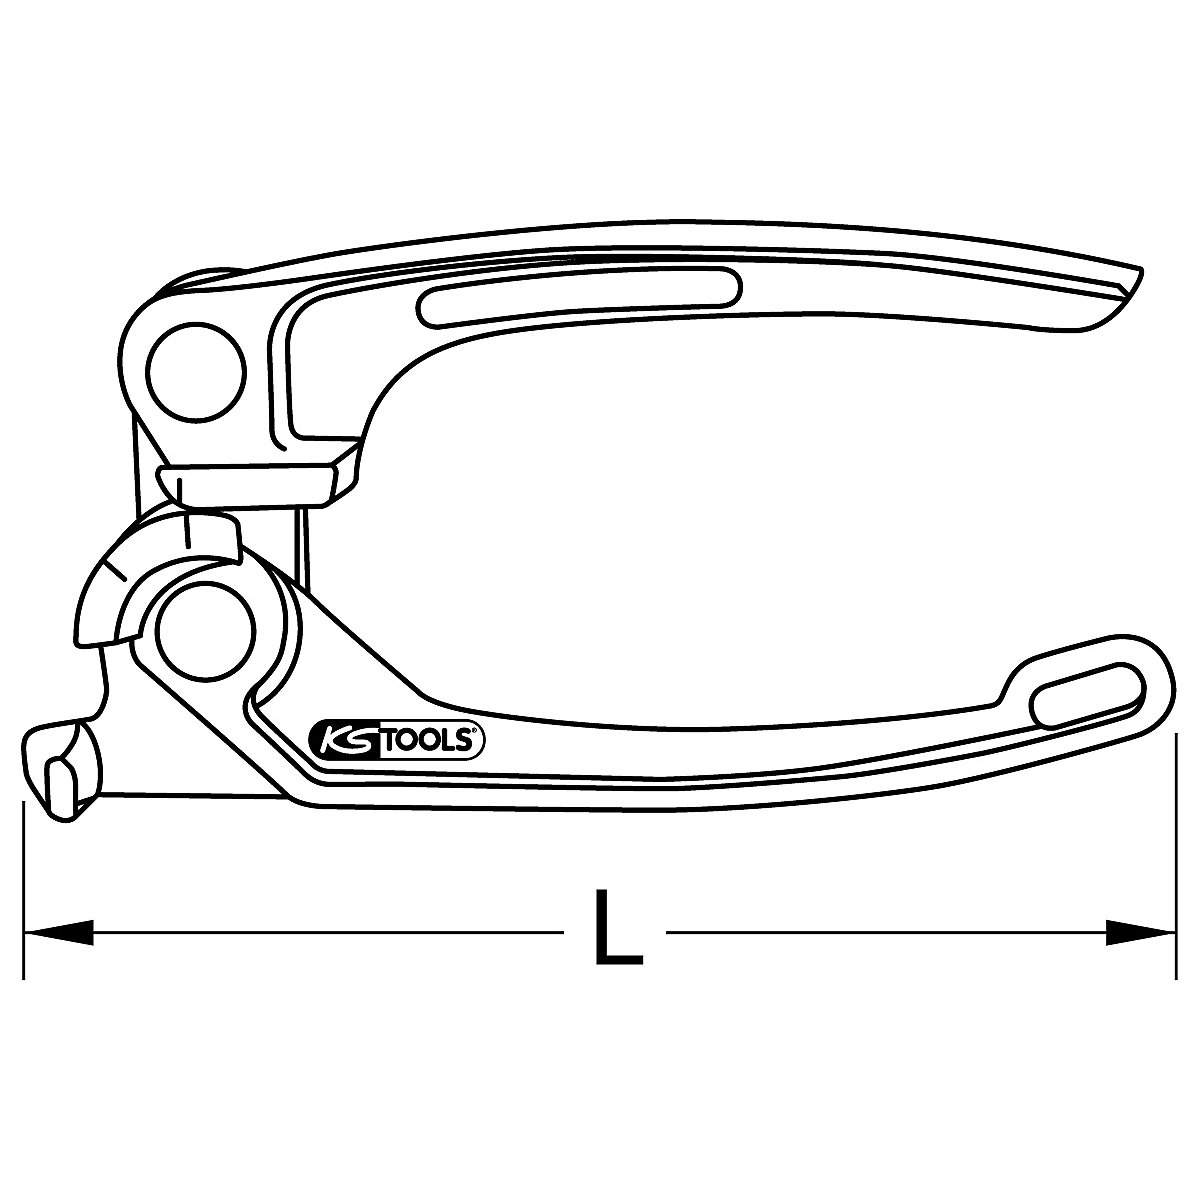 Majhno orodje za upogibanje zavornih cevi – KS Tools (Slika izdelka 8)-7